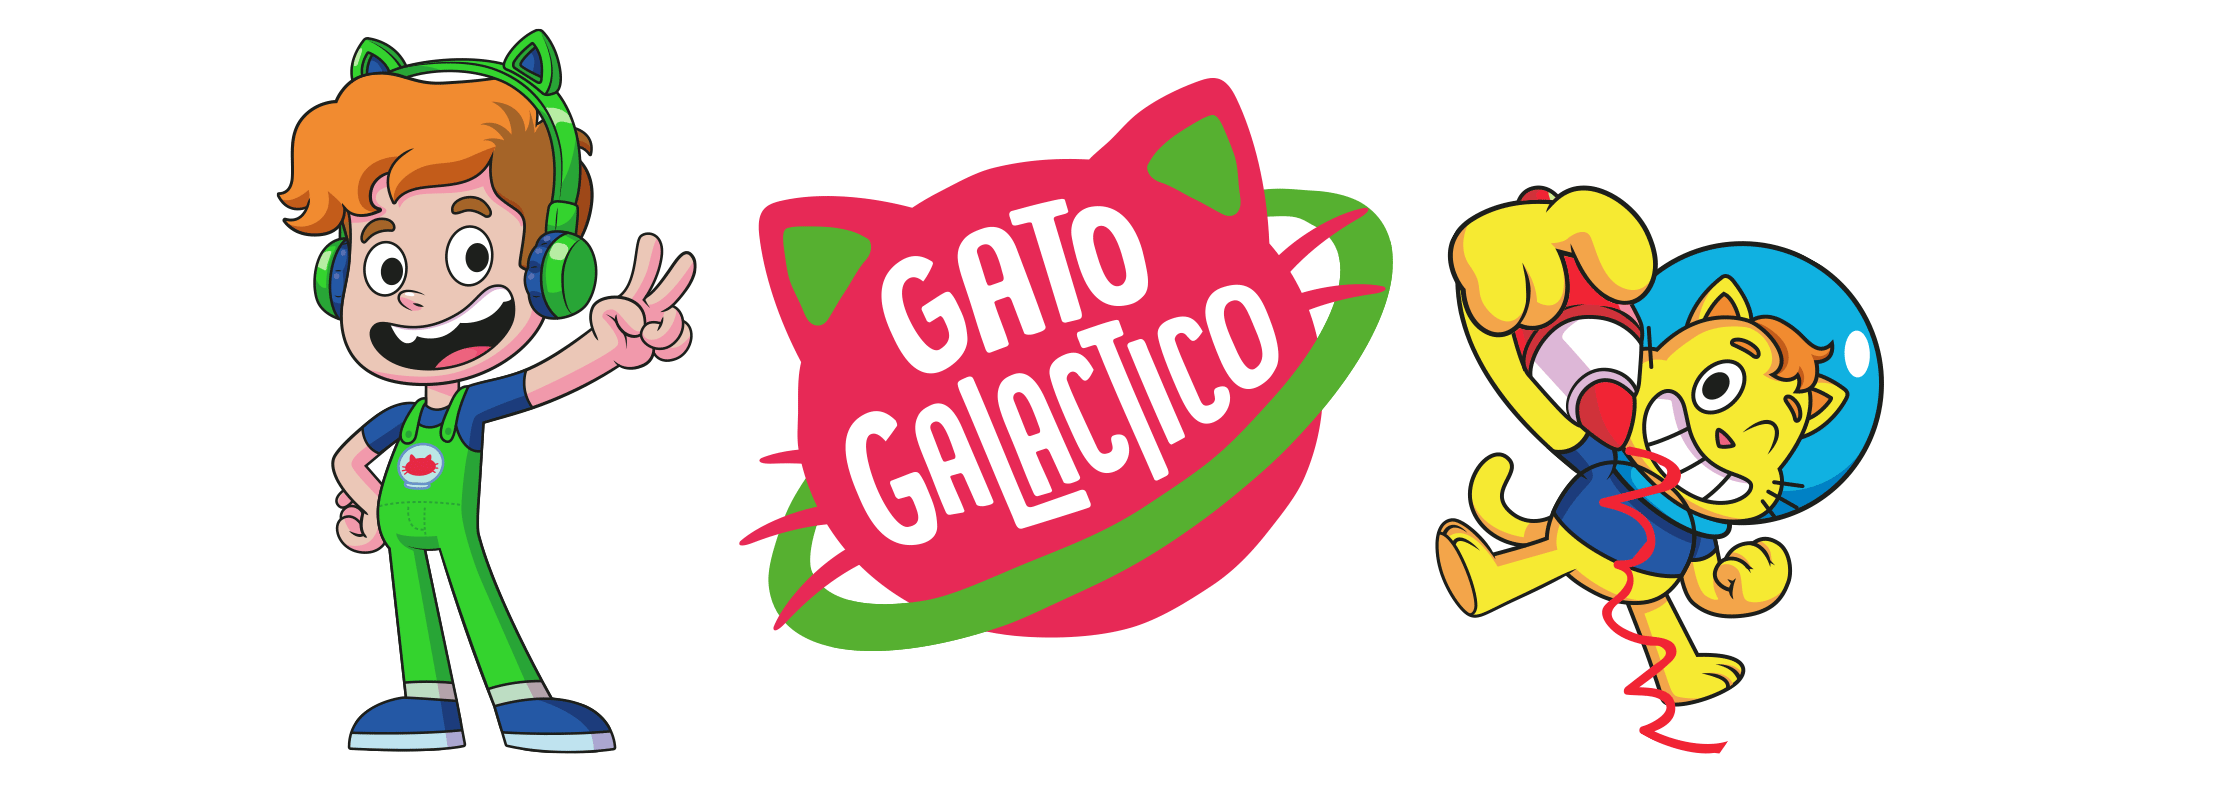 Gato Galactico  GALÁXIA 